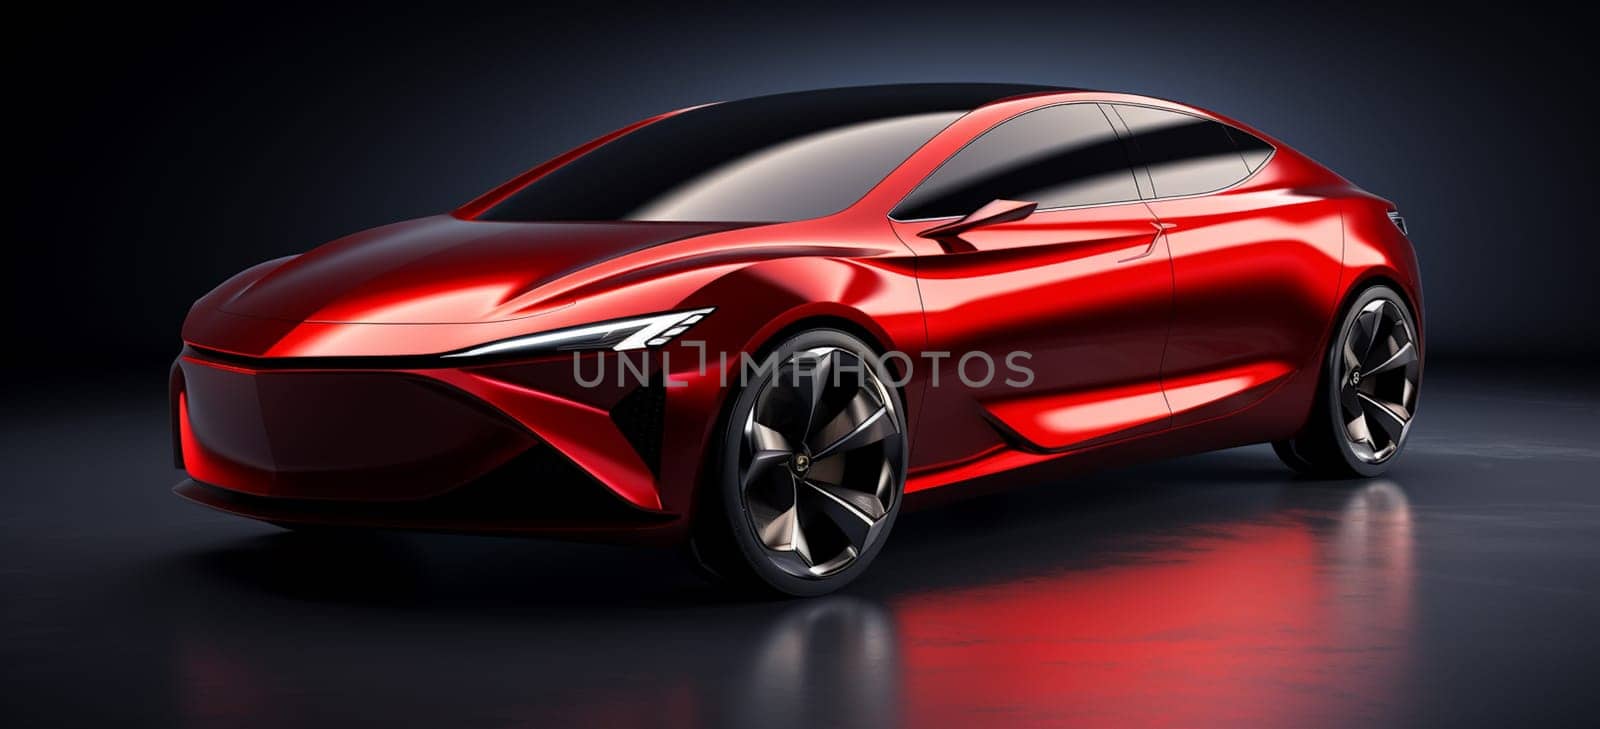 Red hatchback car - 3D render. High quality photo